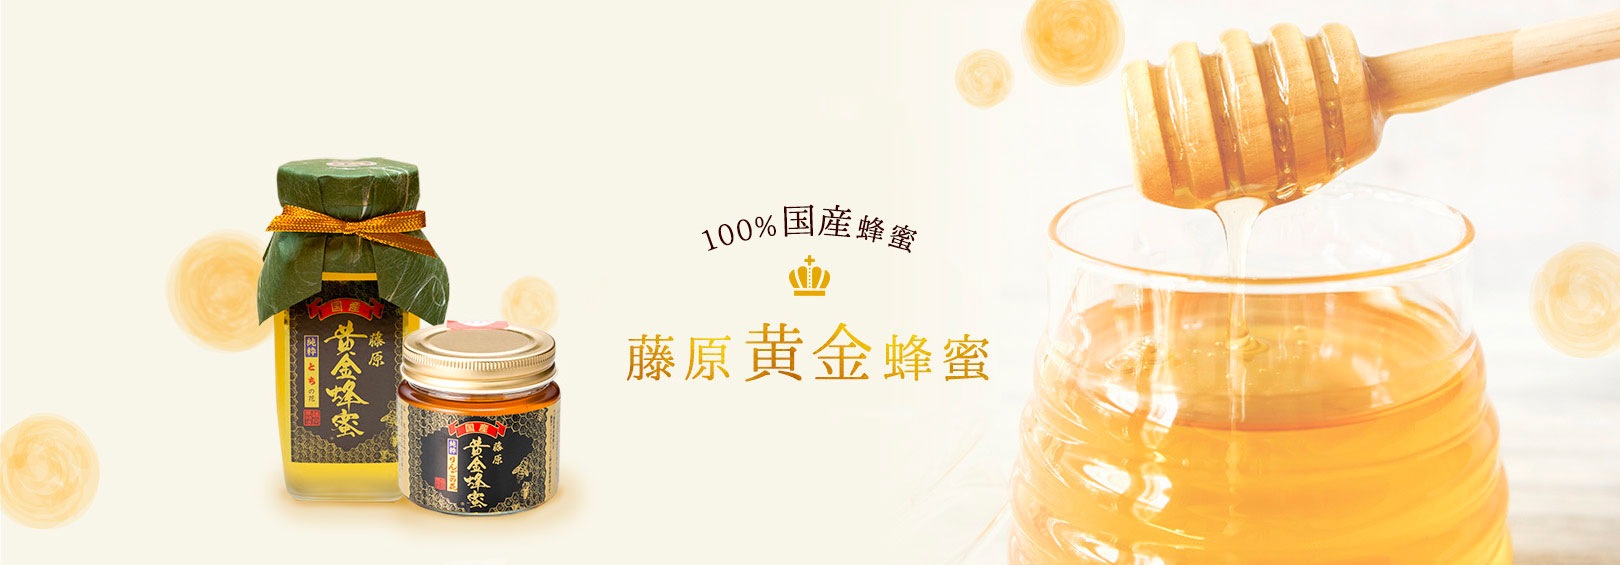 100%国産蜂蜜「藤原黄金蜂蜜」